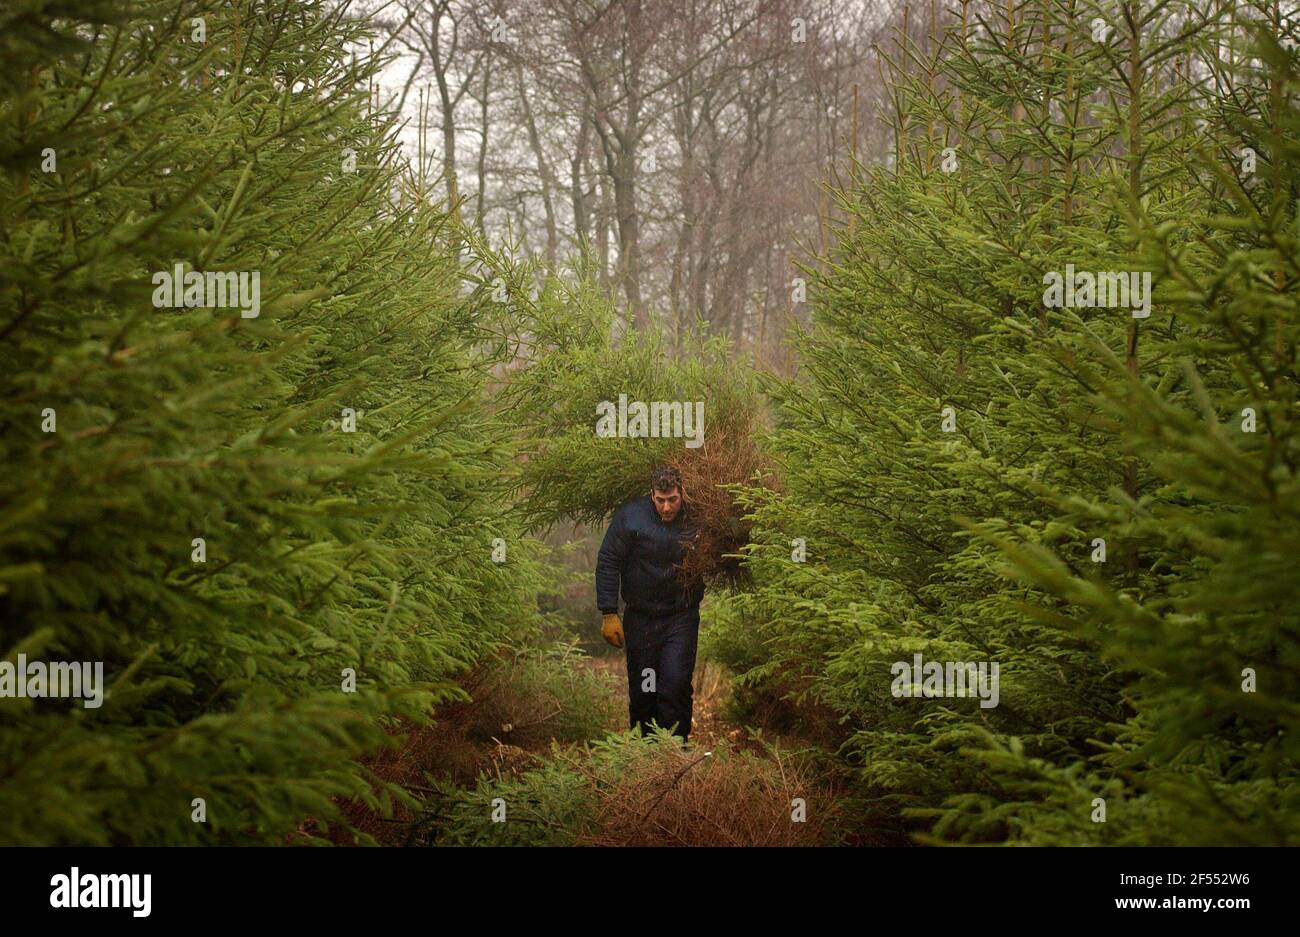 LE FORESTIER TOM WATTERS COUPE DE L'ÉPINETTE DE NORVÈGE DANS UNE PLANTATION SUR LE DOMAINE D'ARBURY À NORTHANTS. 13/12/02 le personnel de PILSTONField a été photographié ce matin en coupant des arbres de Noël sur le domaine Arbury, Nuneaton. Si la photo est imprimée, pourriez-vous vous assurer que les « fontaines » sont mentionnées, en collaboration avec le domaine d'Arbury ? Les fontaines sont des consultants forestiers du domaine d'Arbury. (Lorsqu'on le cite, les fontaines devraient être toutes minuscules et je les attache ). Les hommes photographiés étaient Terry Bayley (superviseur) et Tom Watters (chef d'équipe) - tous deux membres de l'équipe de terrain des fontaines. Banque D'Images